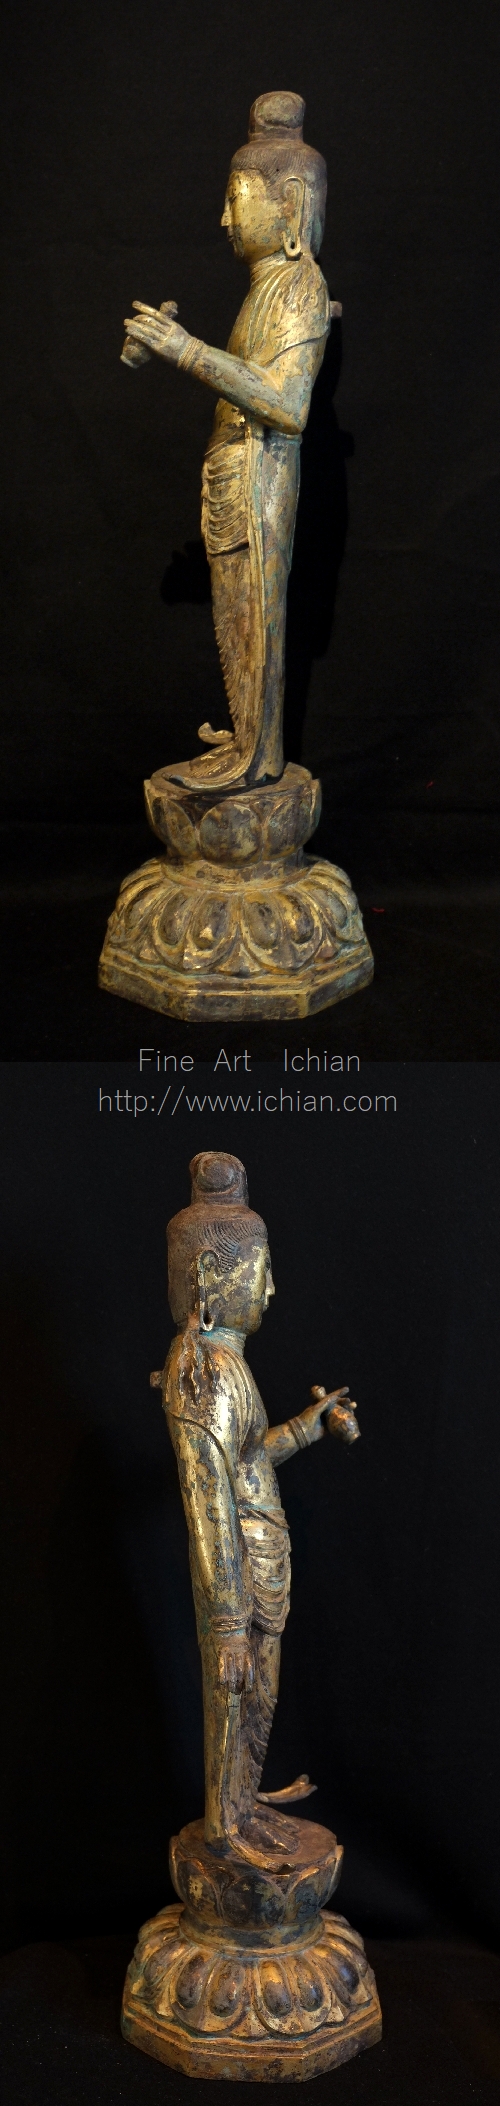 金銅菩薩立像 高さ61㎝ 統一新羅時代 大型金銅仏希少品 :: ichian